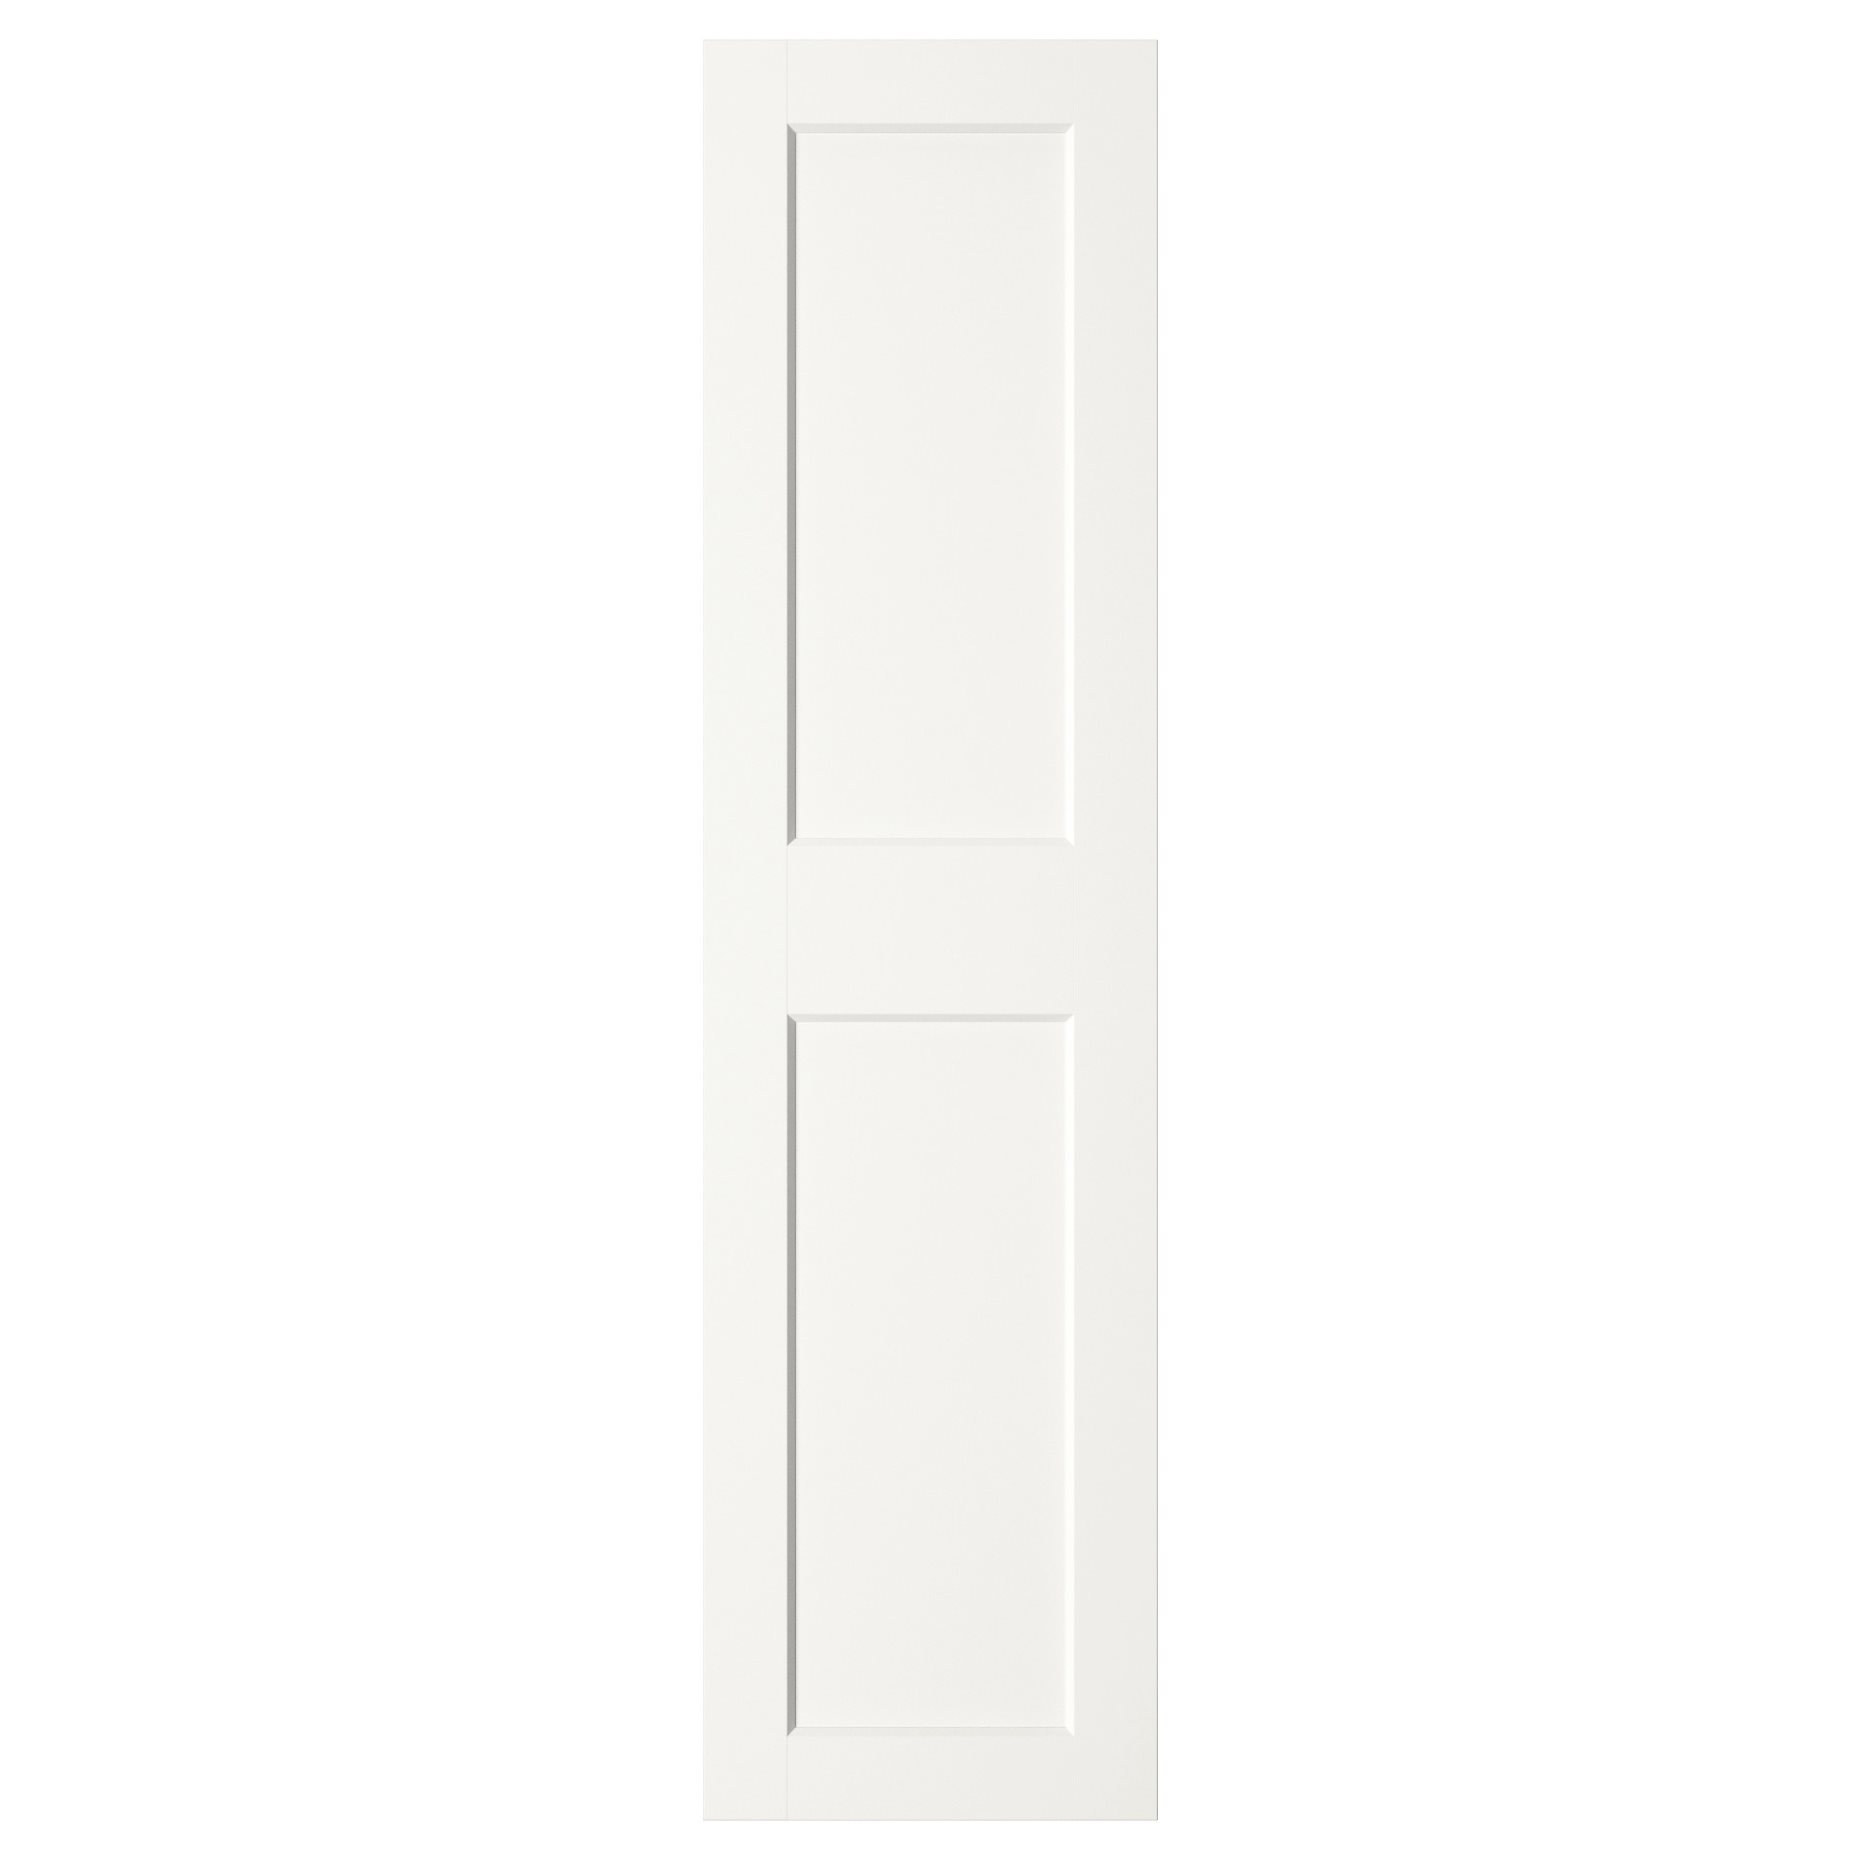 GRIMO, door, 50x195 cm, 403.434.64